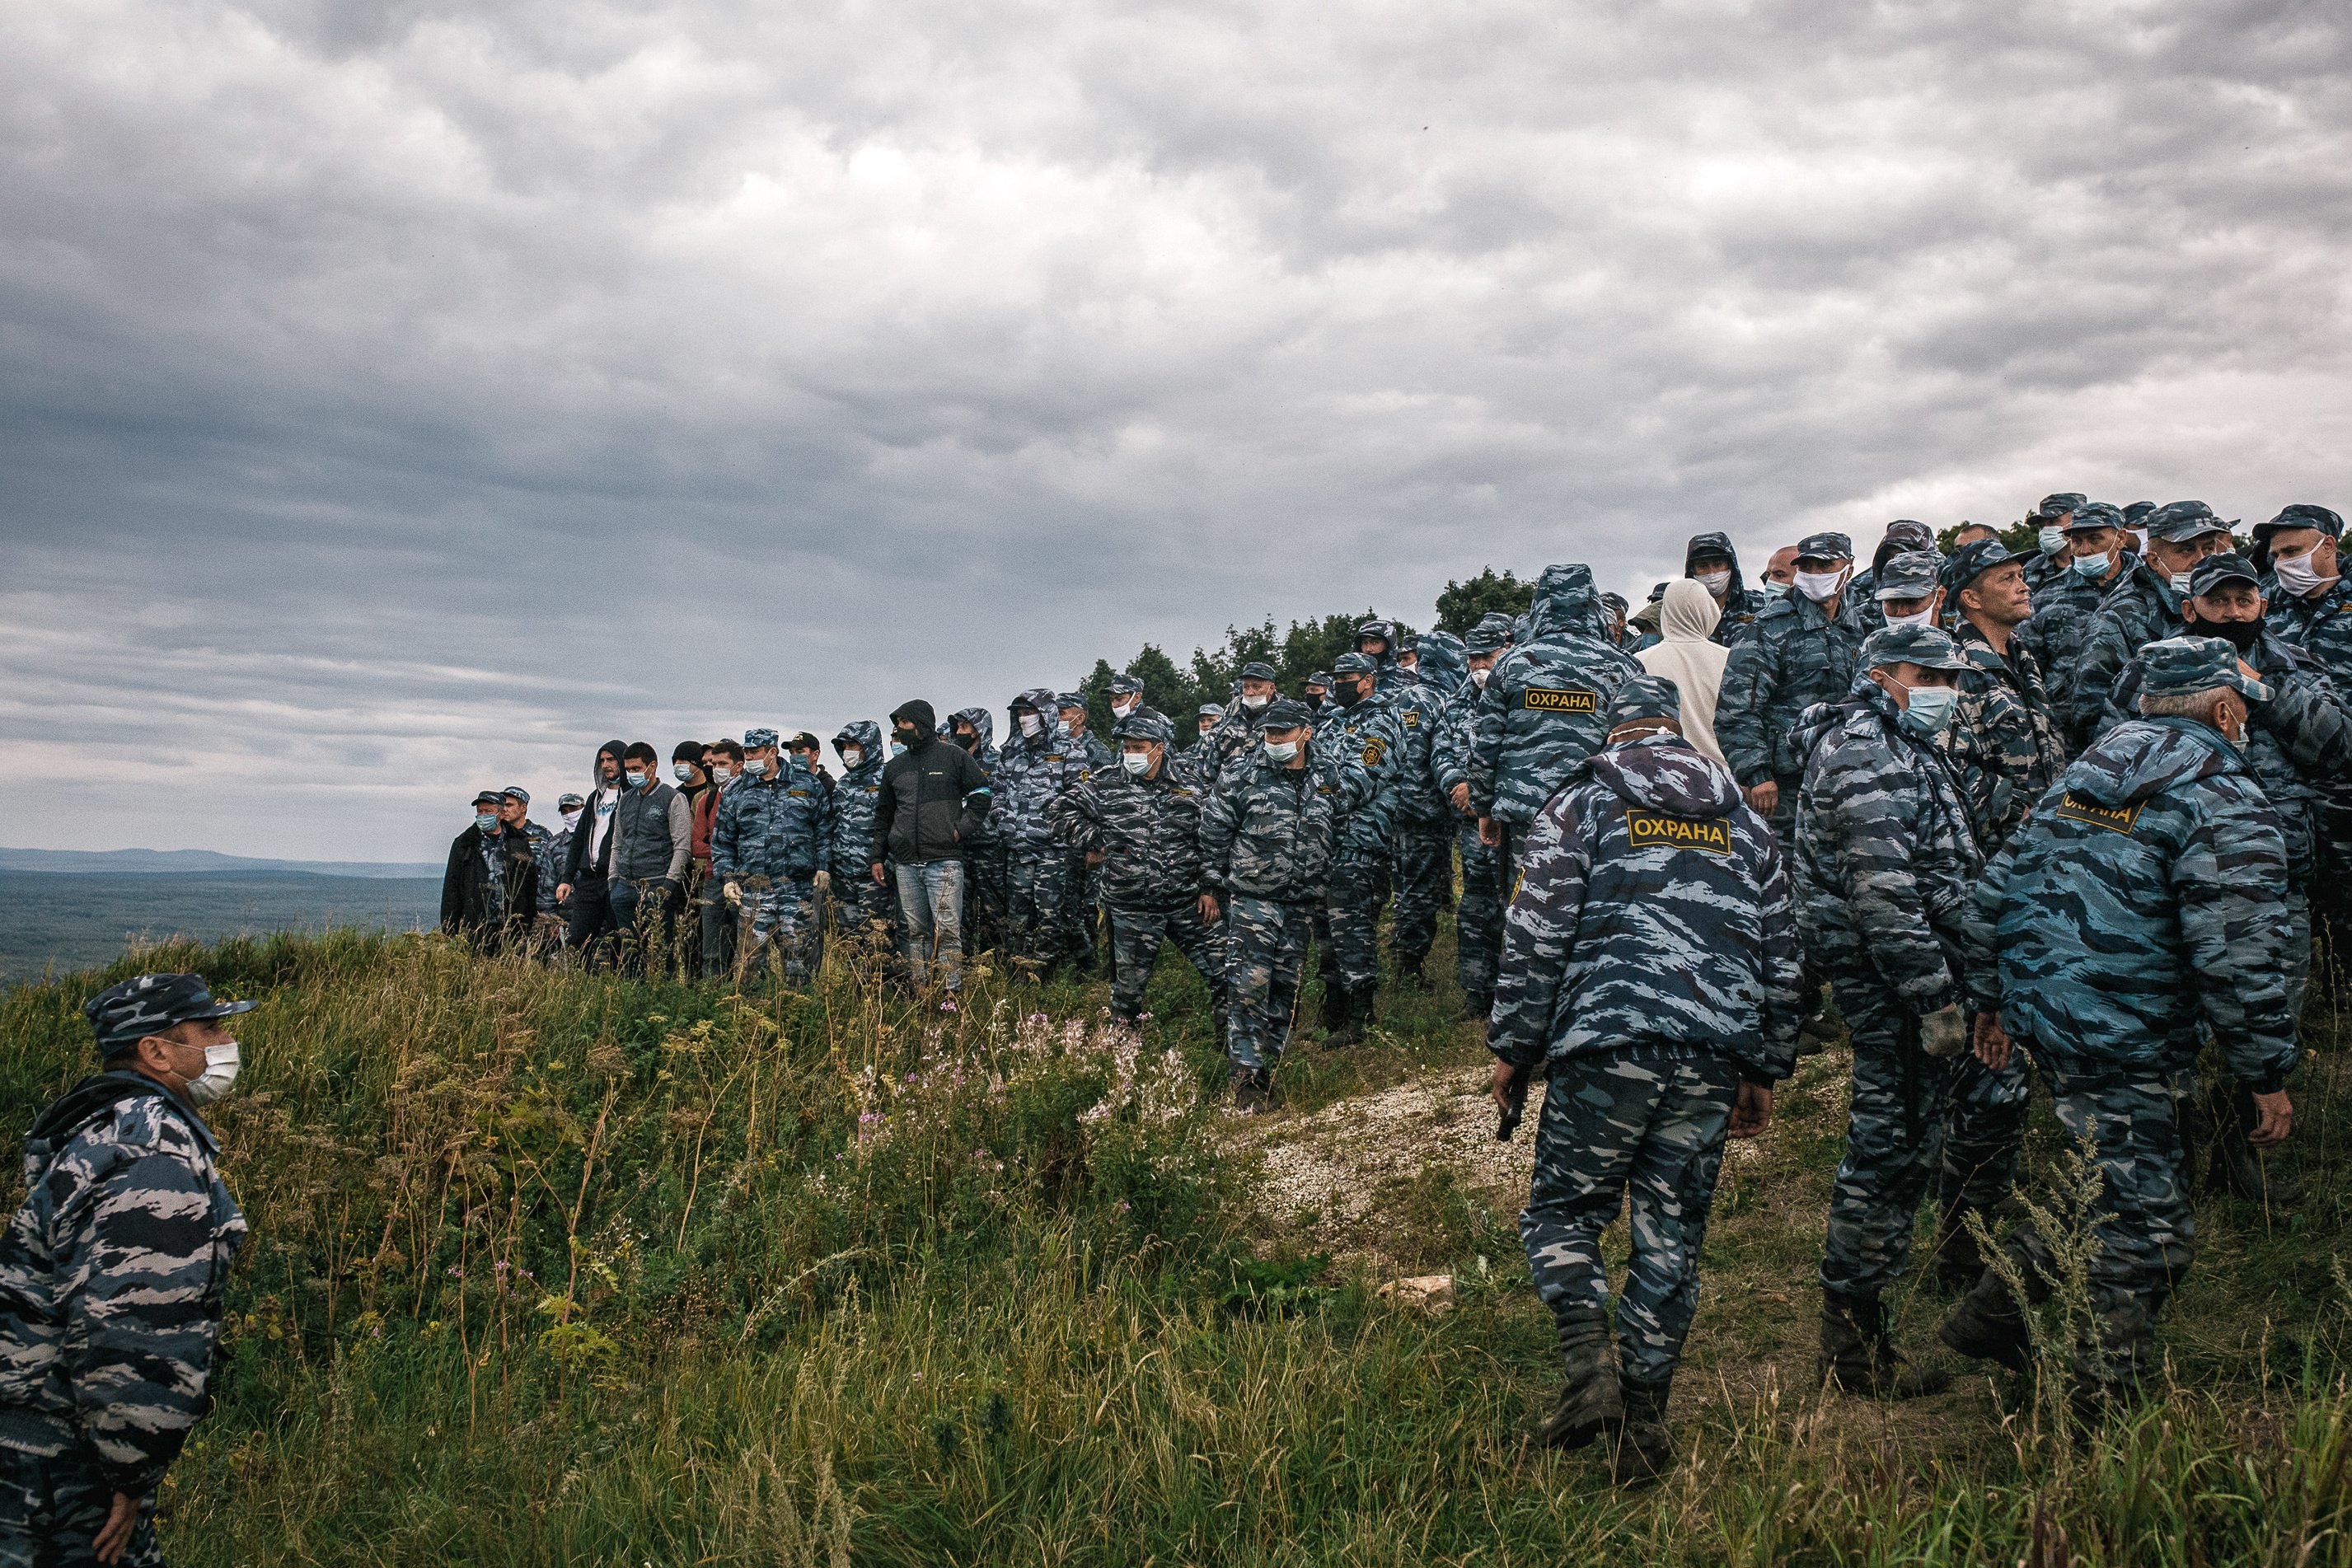 Приватне охоронне підприємство на горі Куштау, 15 серпня 2020 р. Фото: Вадим Брайдов / ТАСС